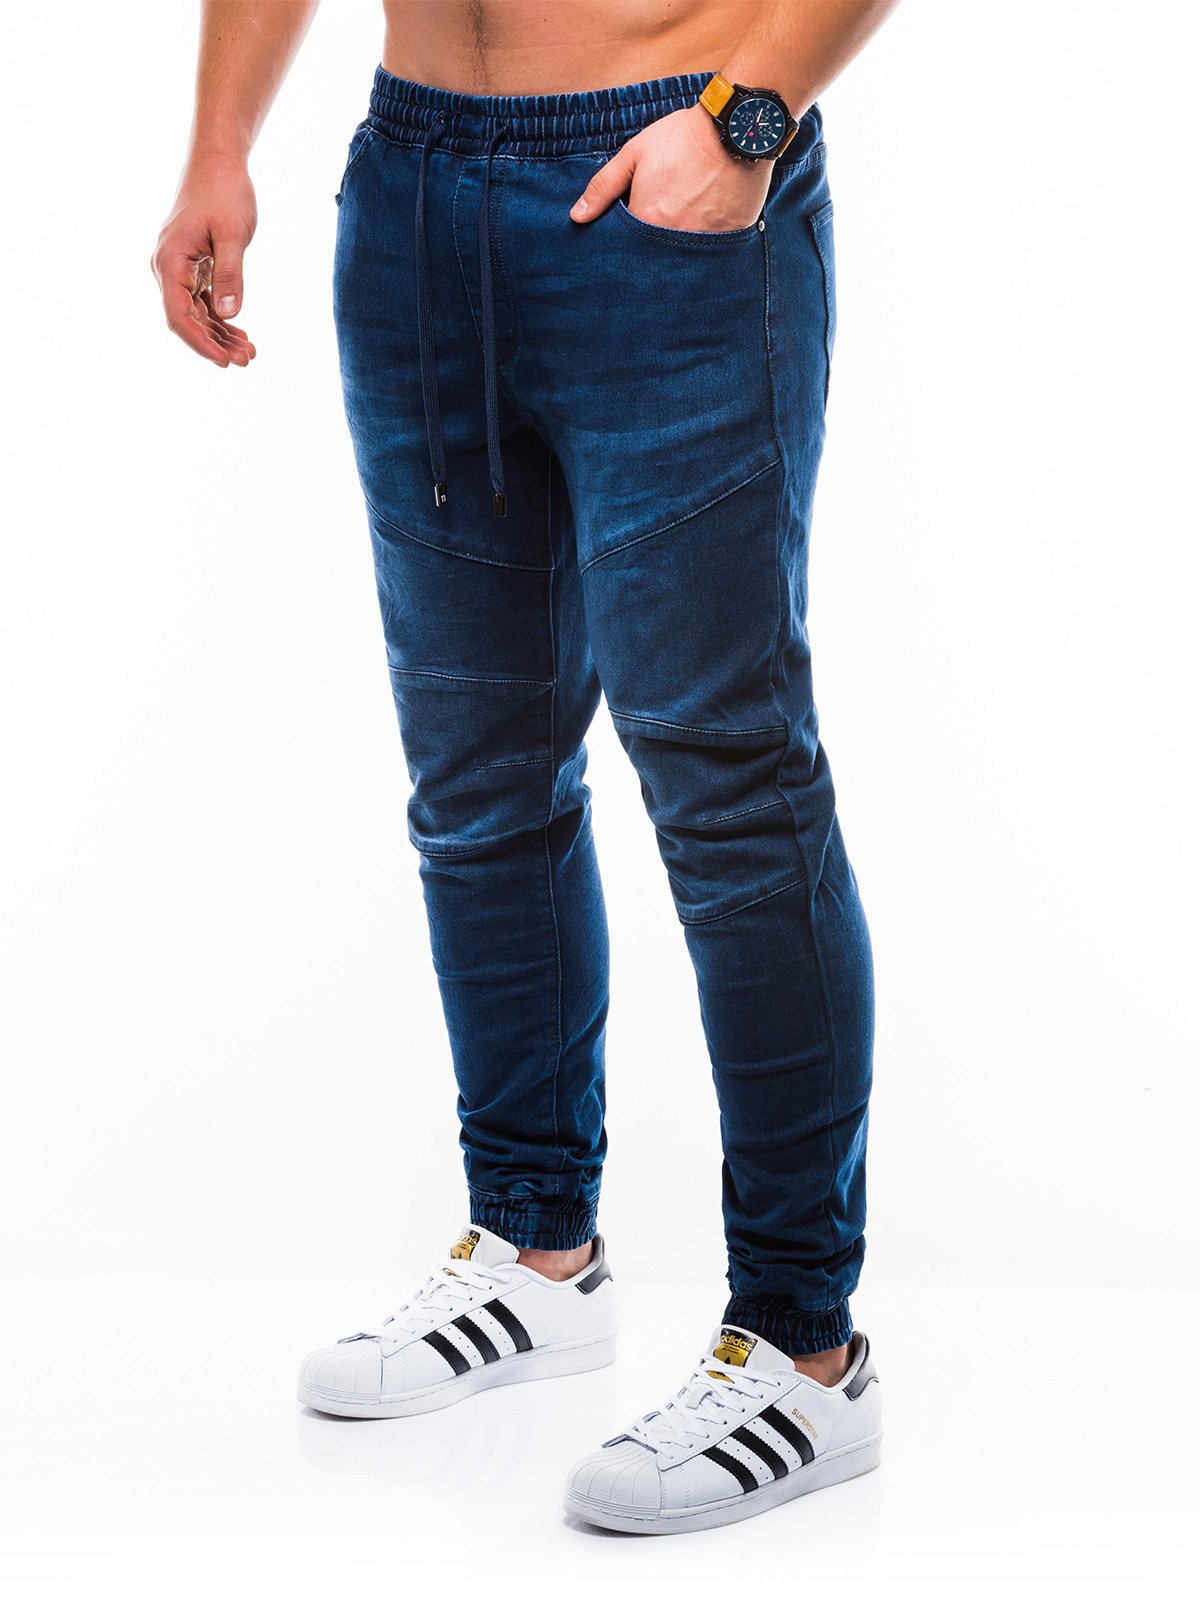 Men's jeans joggers P812 - blue | MODONE wholesale - Clothing For Men